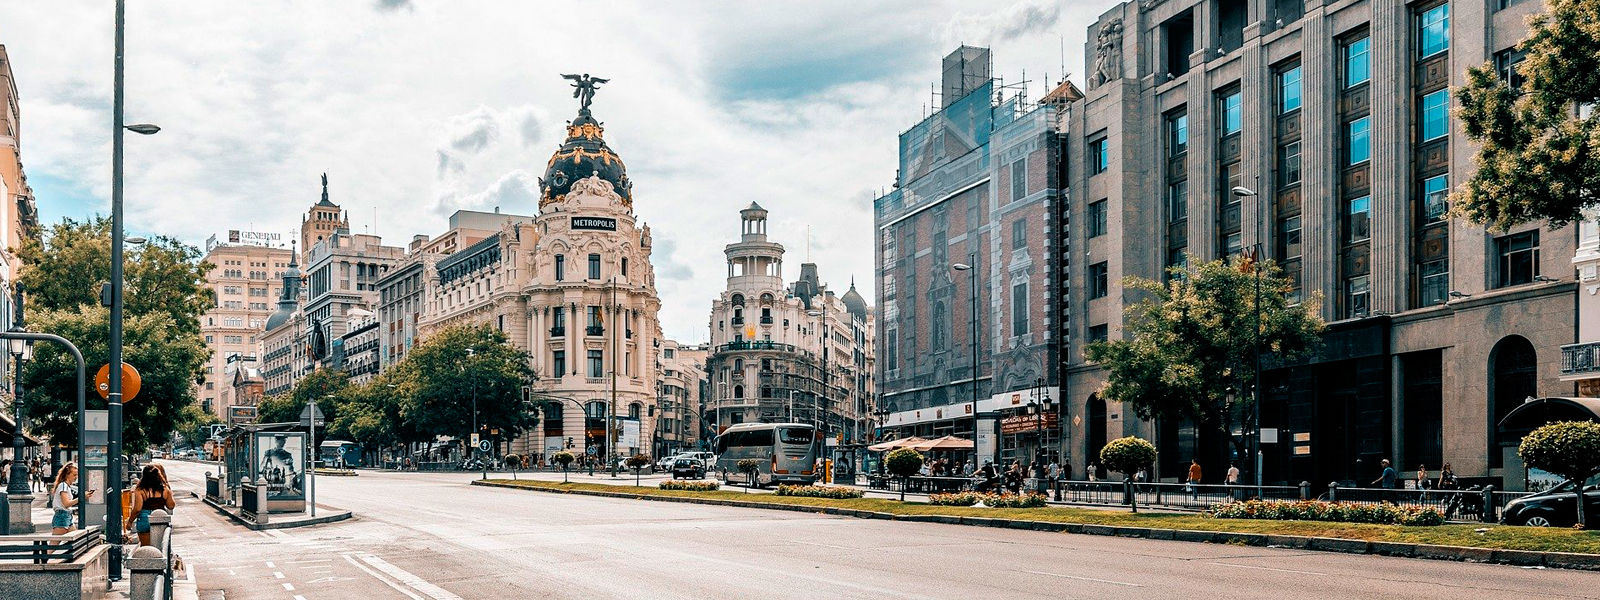 Inmobiliaria CME PENINSULAR en Madrid, venta de pisos en Madrid, alquiler de pisos en Madrid. Venta y alquiler de casas y pisos en Madrid. Inmobiliarias en Madrid